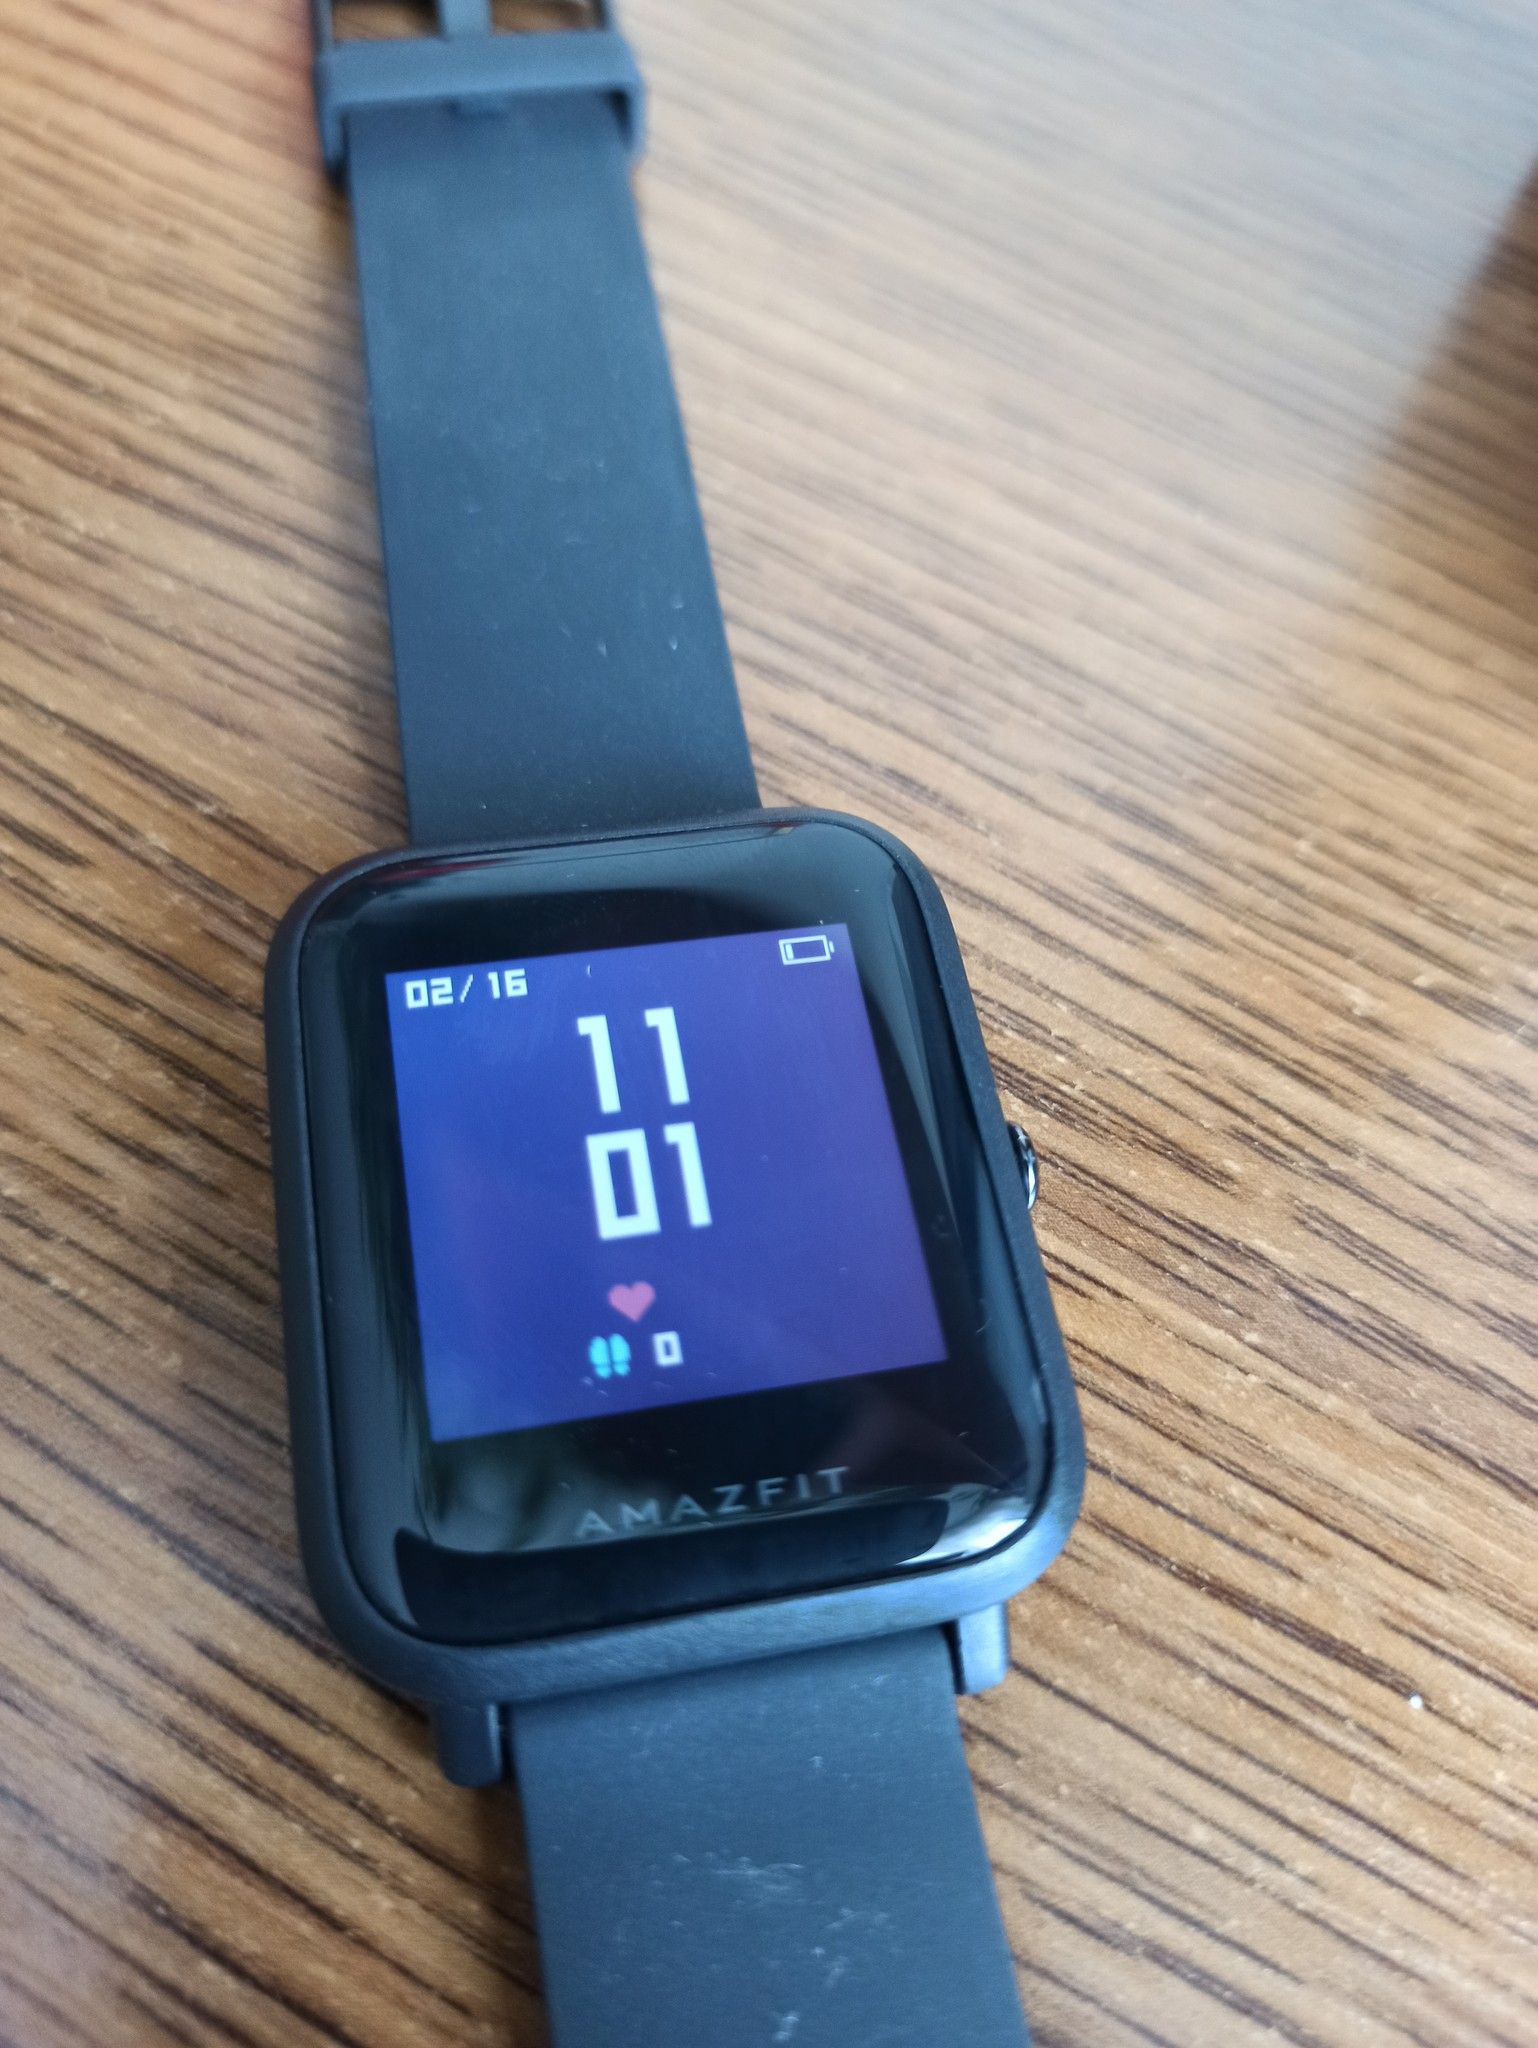 Xiaomi Mi Watch Lite Bhr4704ru